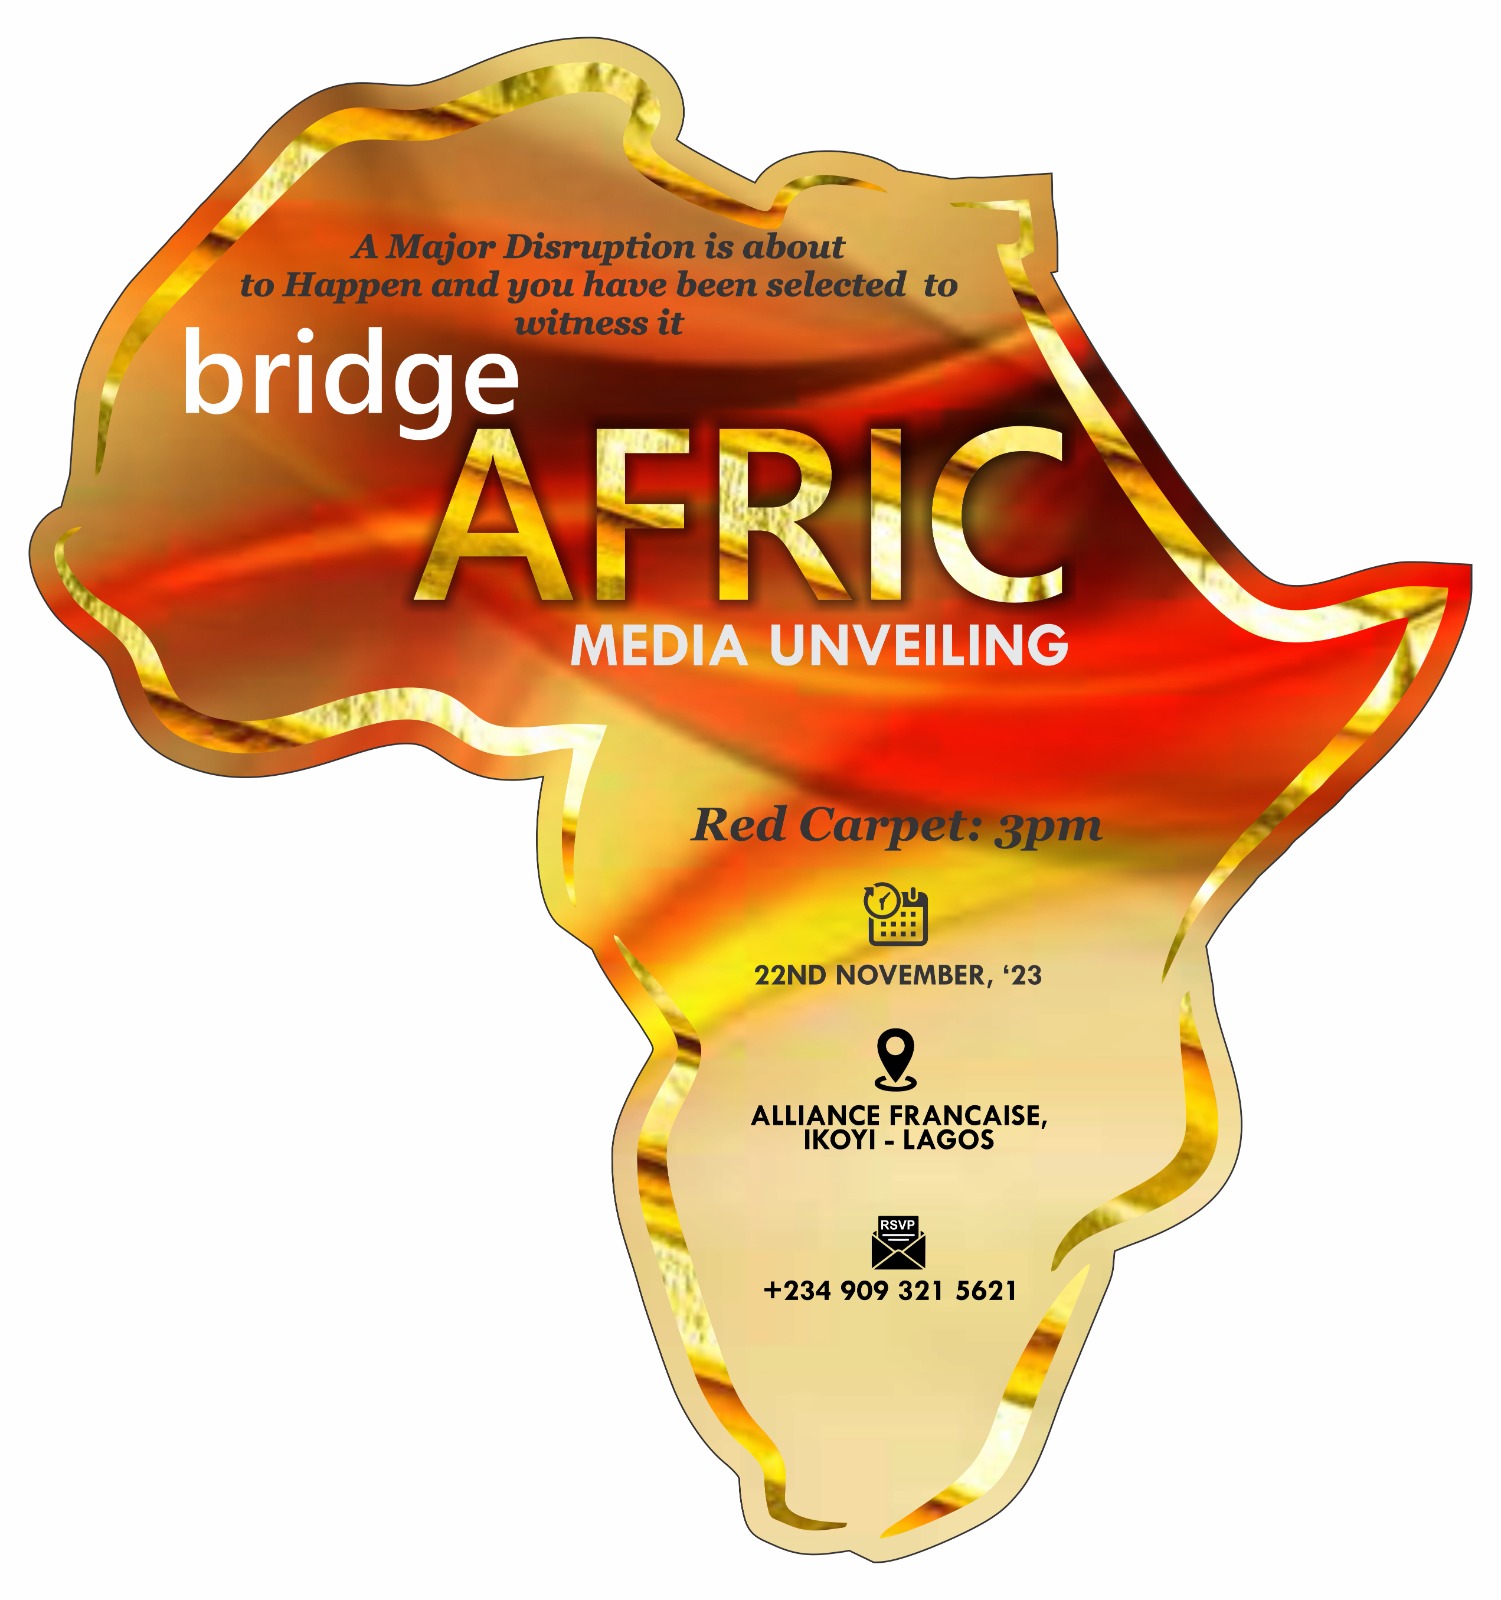 BridgeAfric set for grand launch in Lagos, Paris